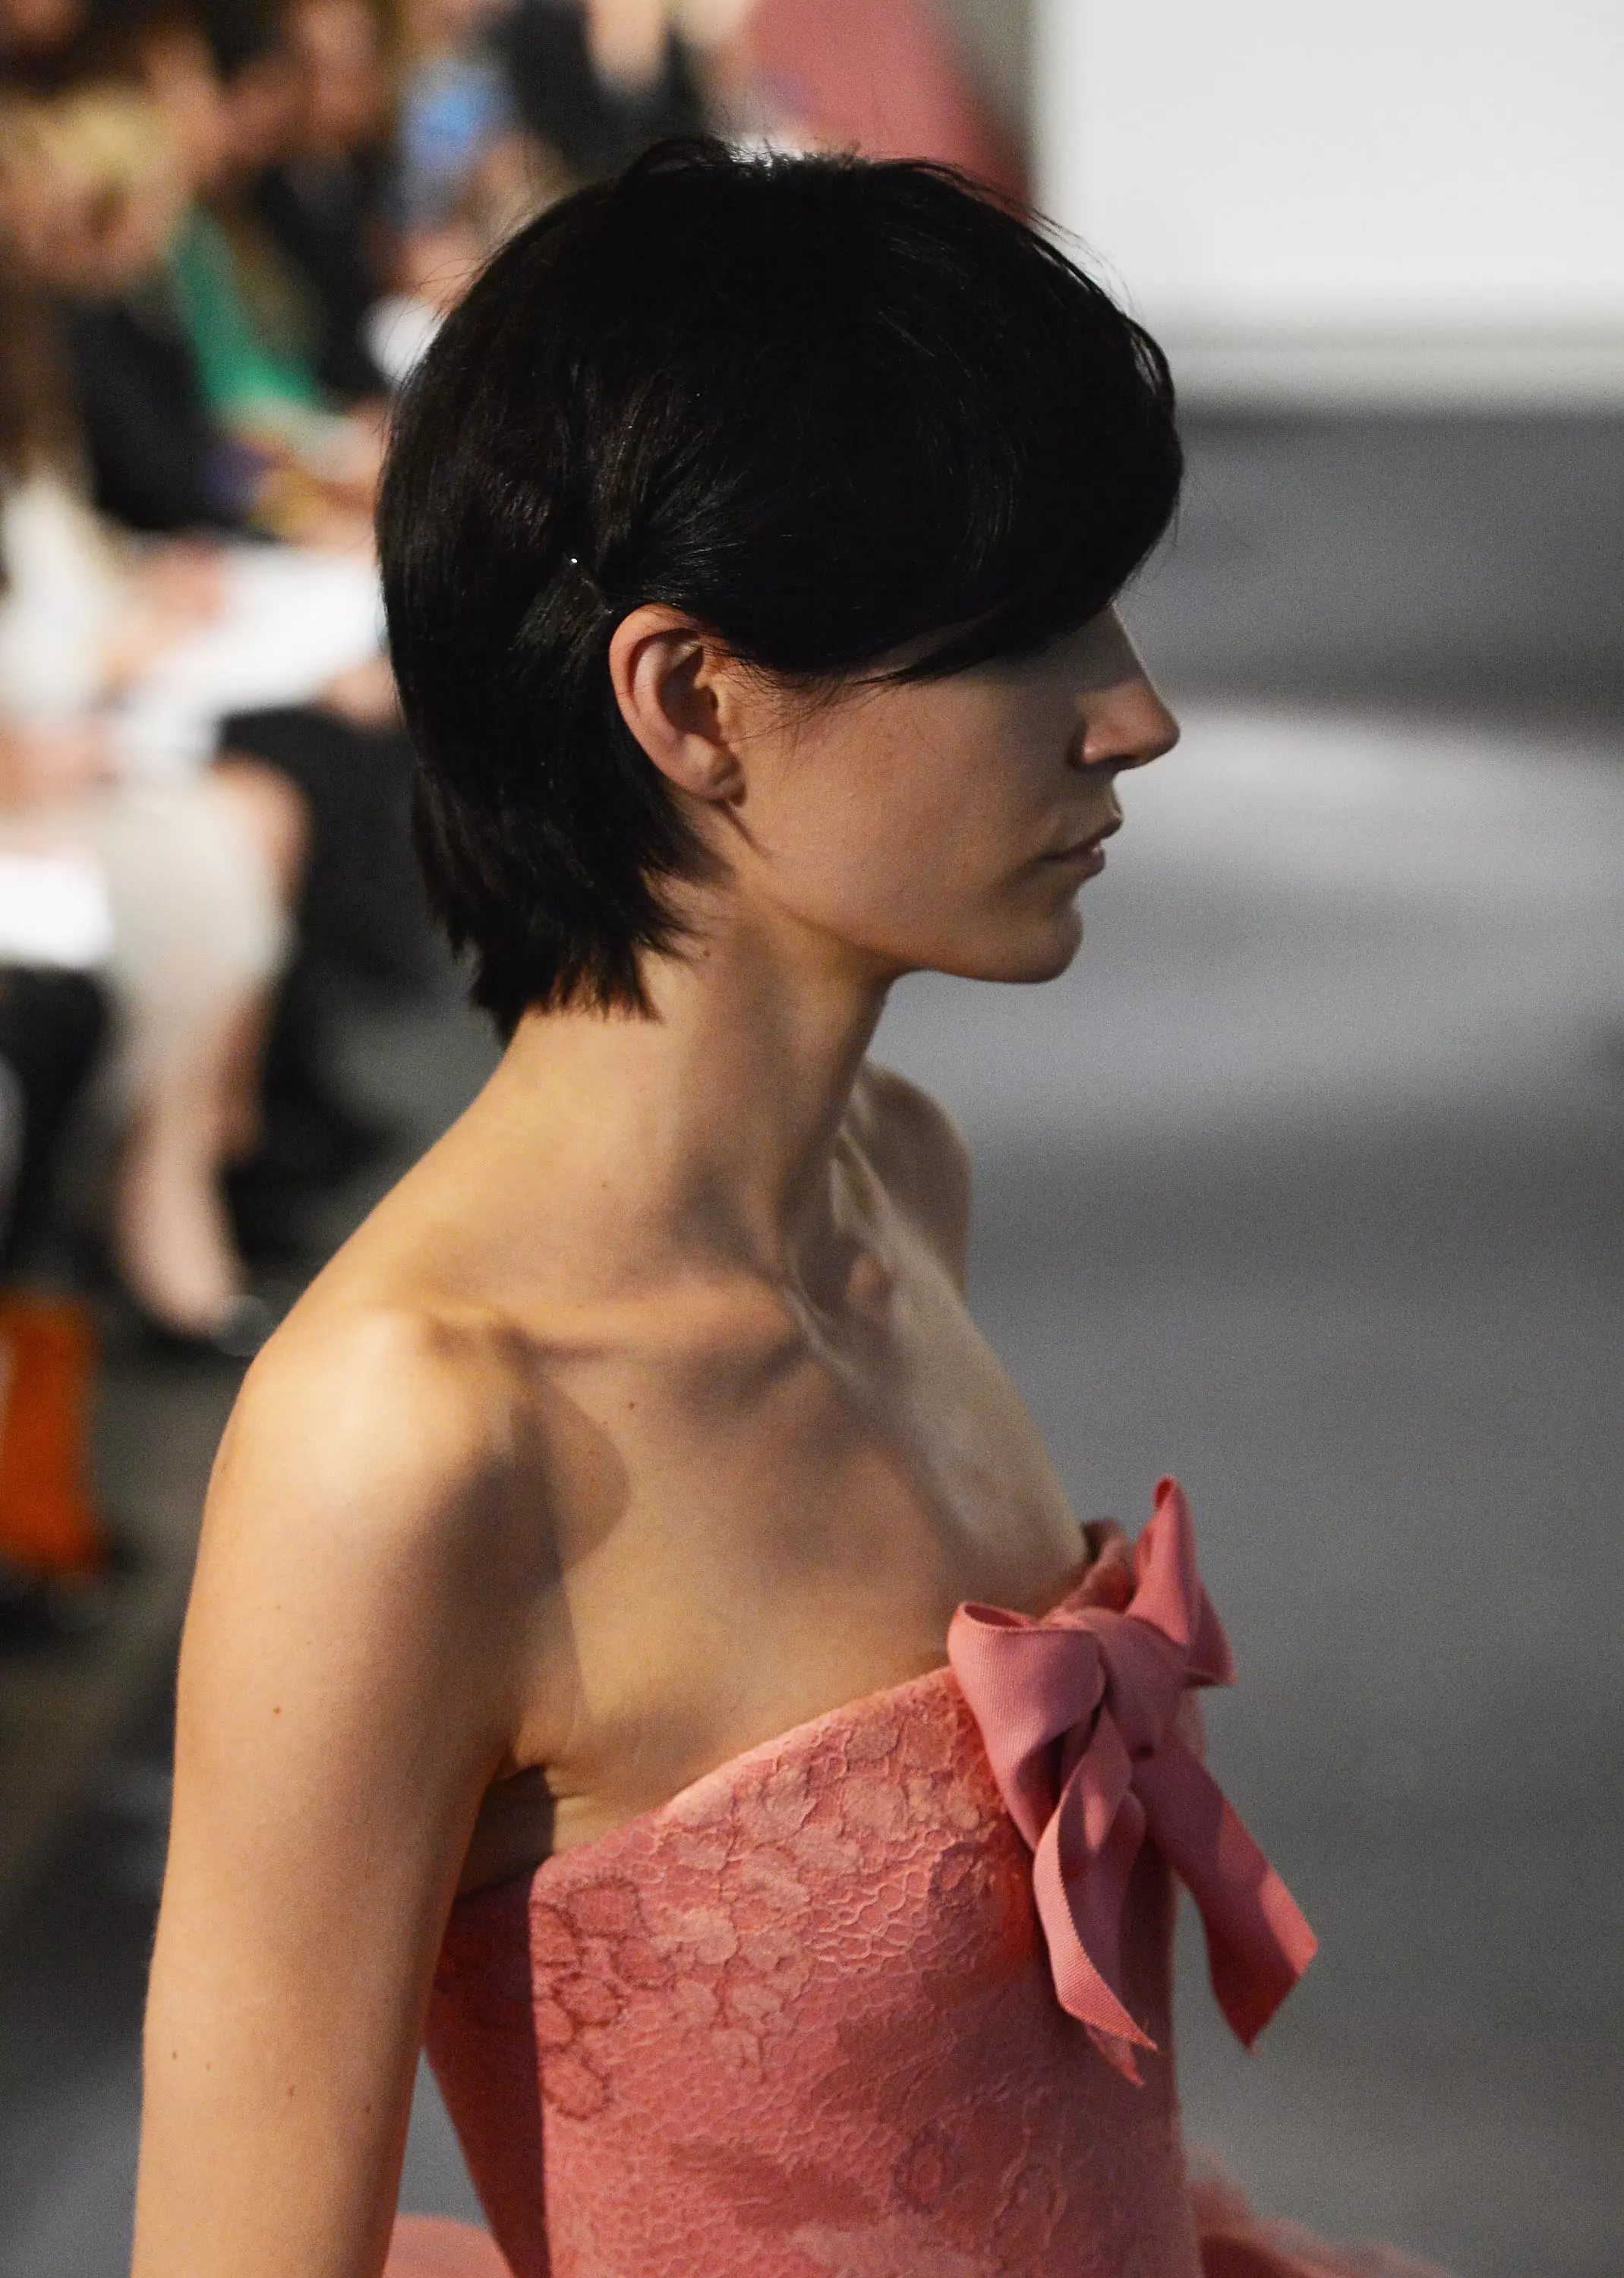 תצוגת שמלות כלה של ורה וונג לסתיו 2014 בניו יורק, אוקטובר 2013